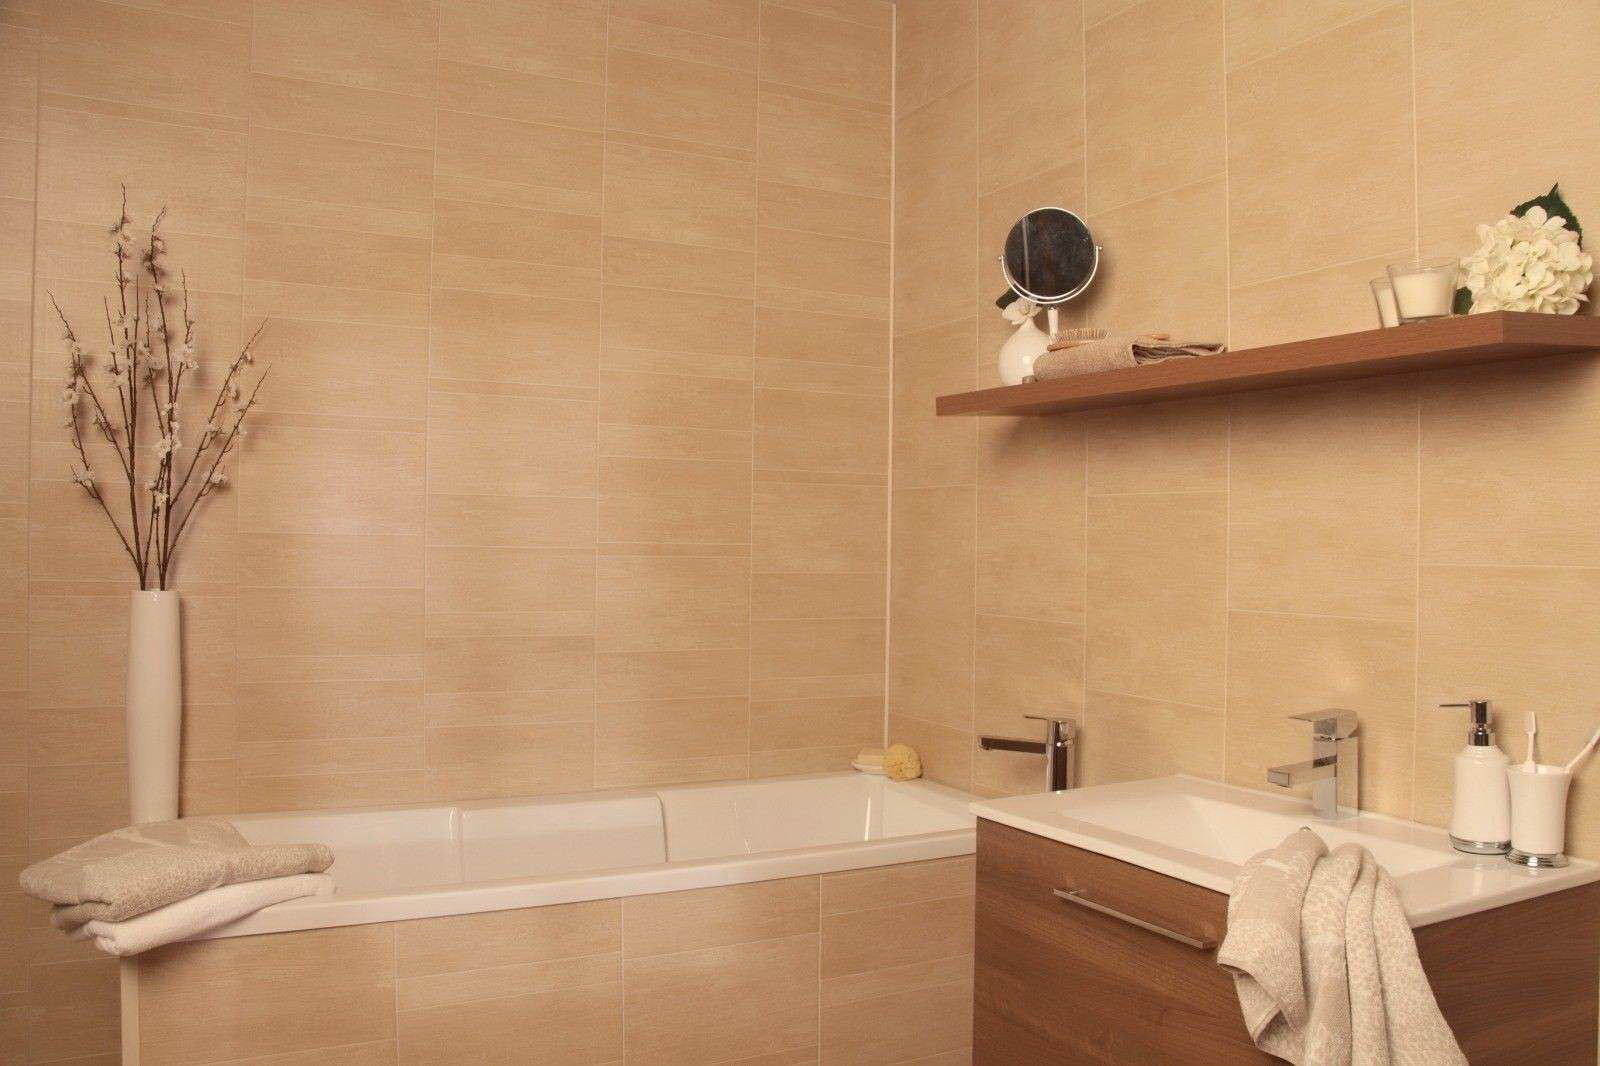 Ванна обделана панелью. Отделочные панели для ванной комнаты. Ванная отделанная панелями. Стеновые панели для ванной комнаты. Настенные панели для ванной.